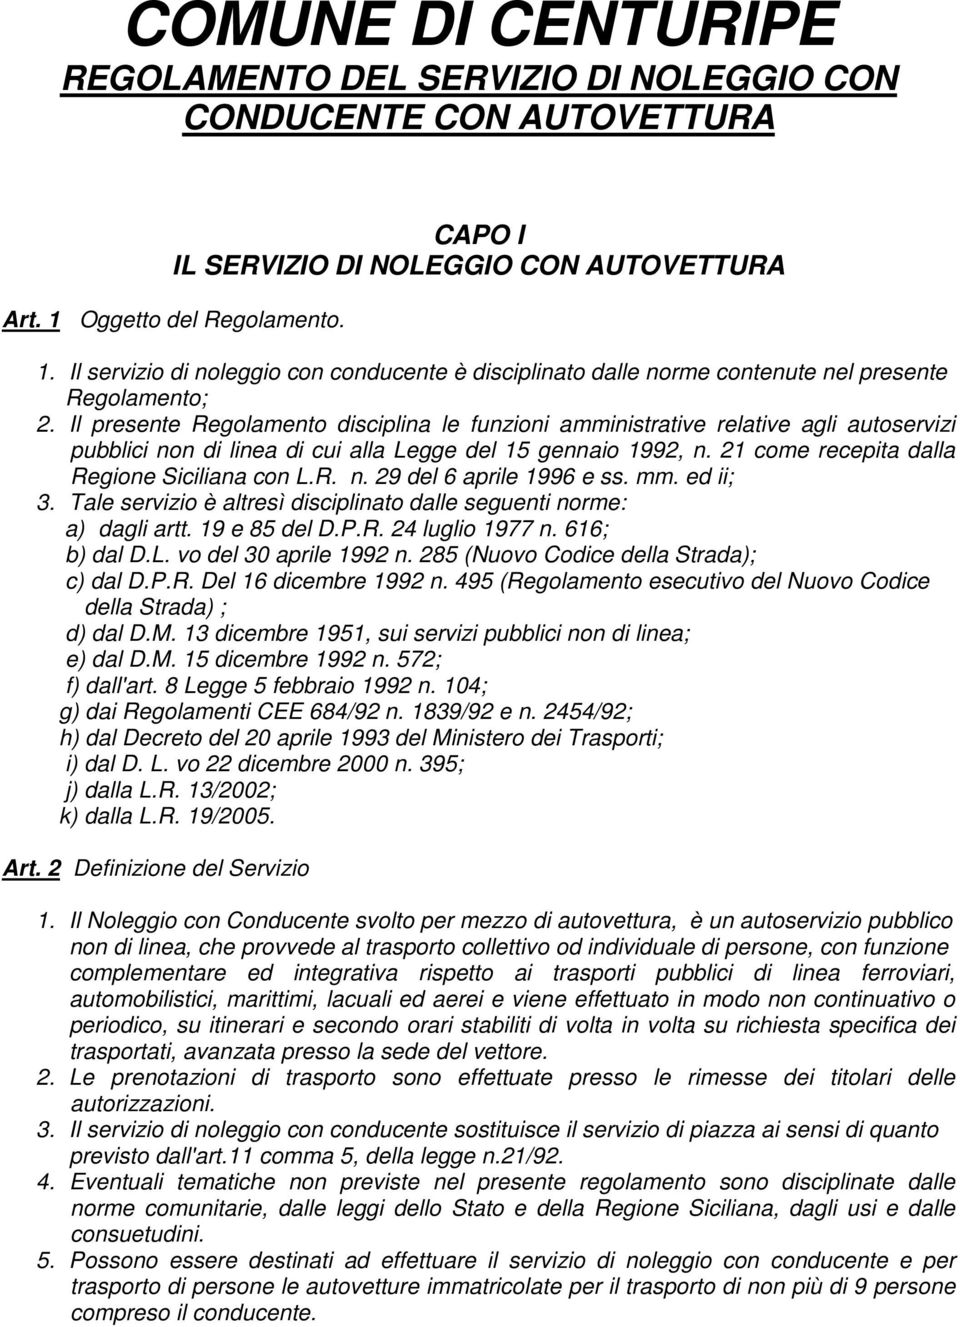 Il presente Regolamento disciplina le funzioni amministrative relative agli autoservizi pubblici non di linea di cui alla Legge del 15 gennaio 1992, n. 21 come recepita dalla Regione Siciliana con L.